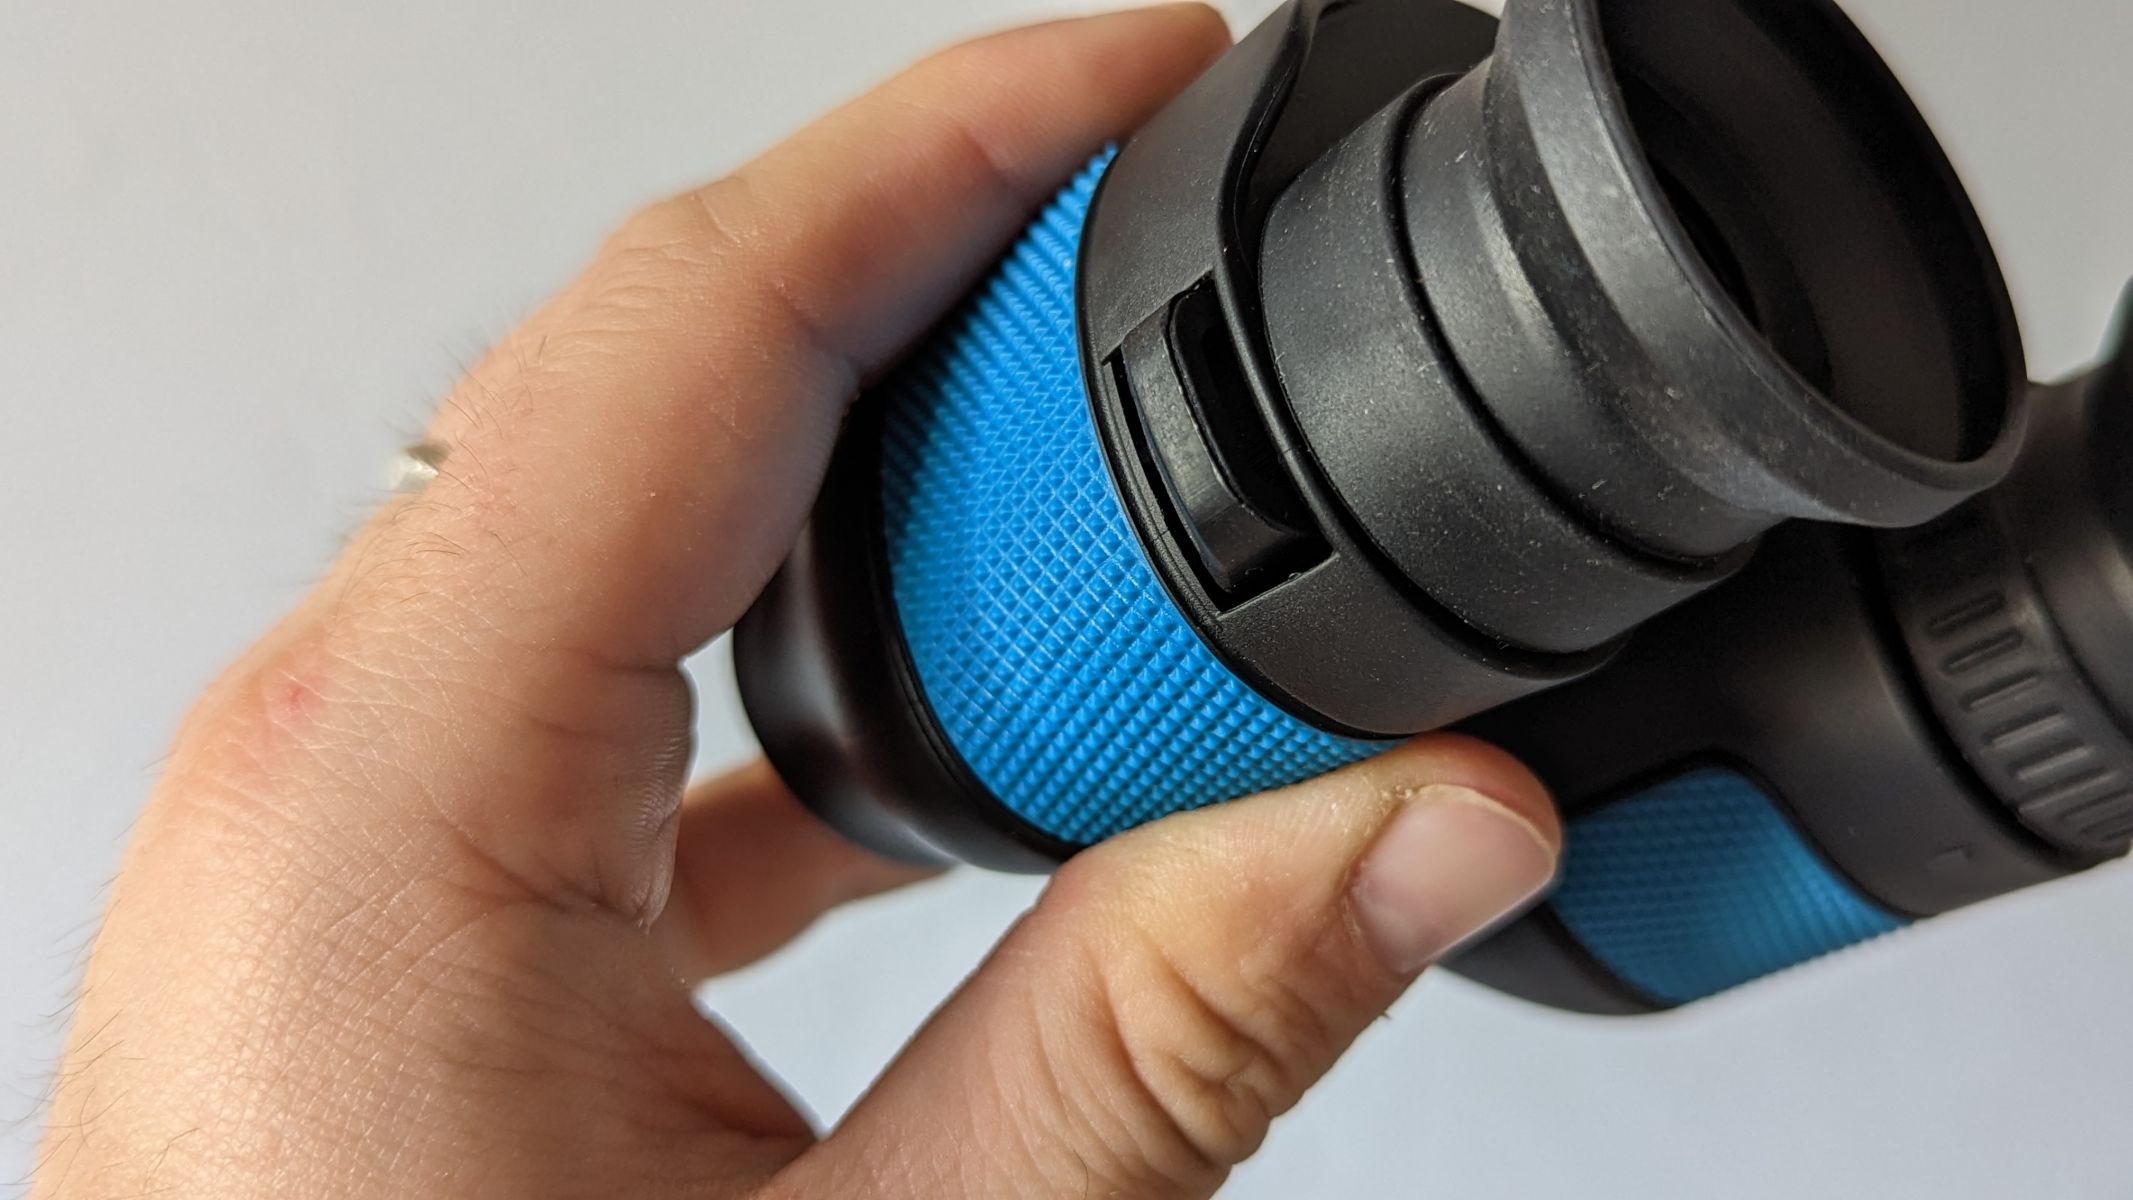 Occer 12x25 binoculars close-up of textured grip